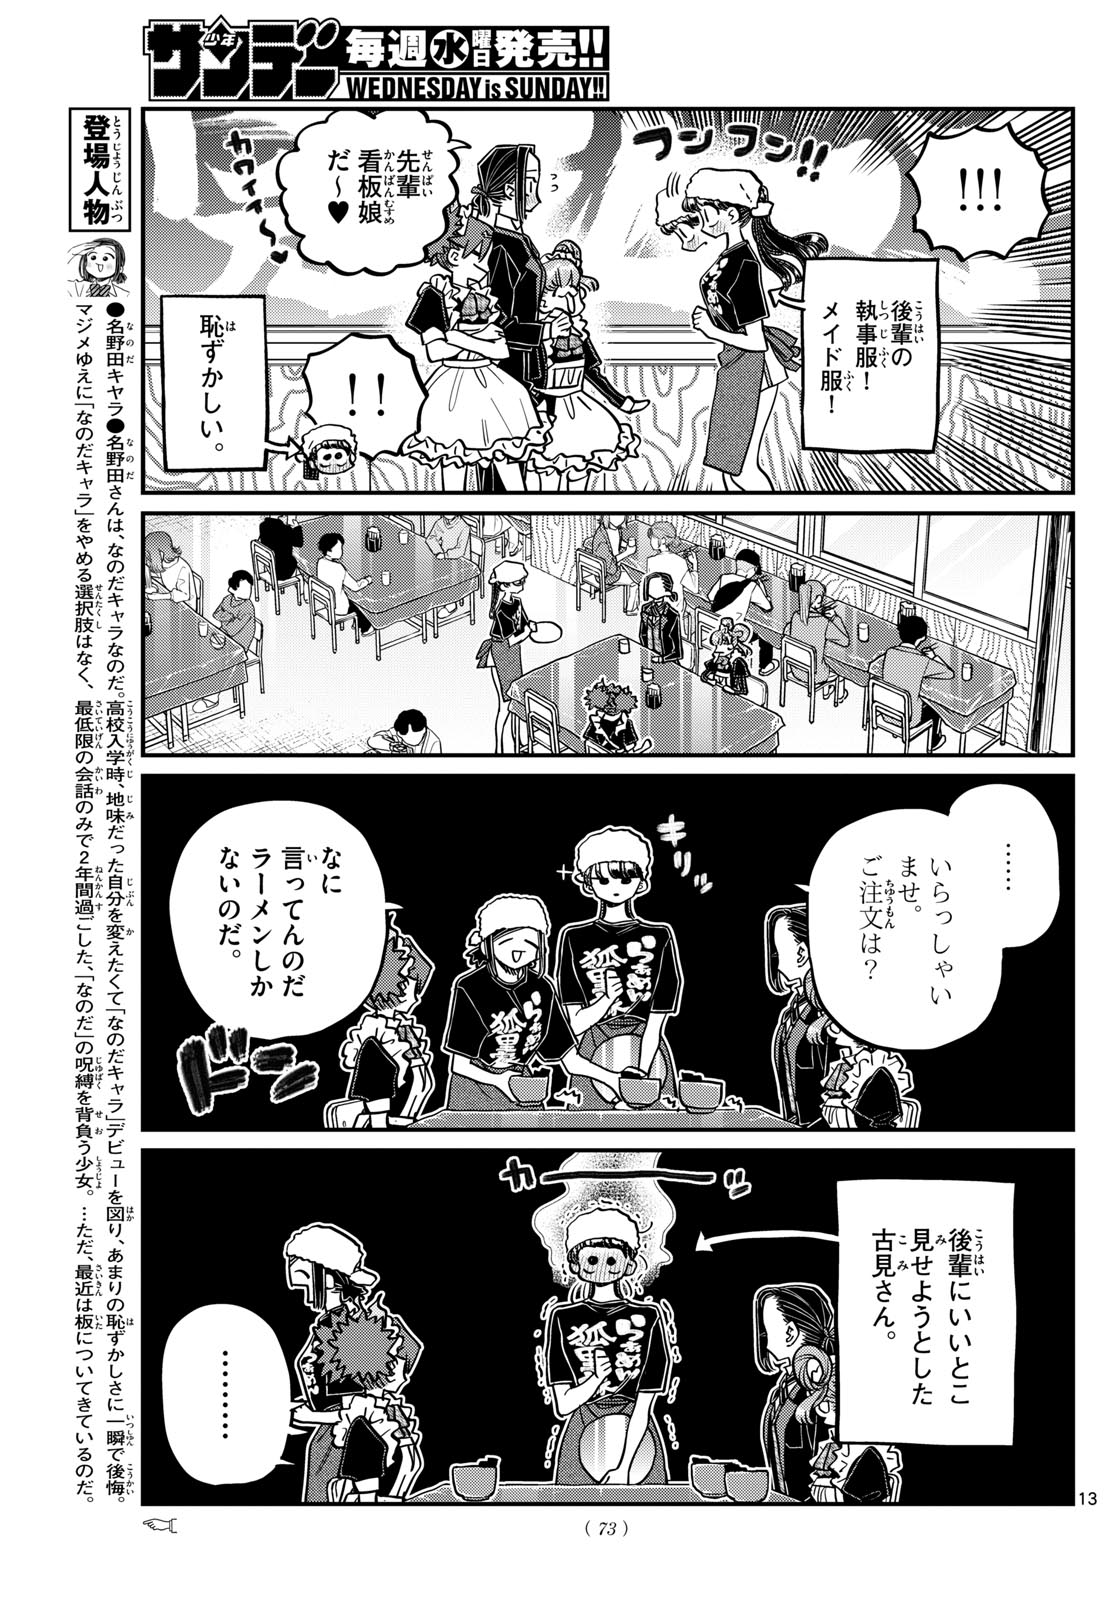 Komi-san wa Komyushou Desu - Chapter 451 - Page 13